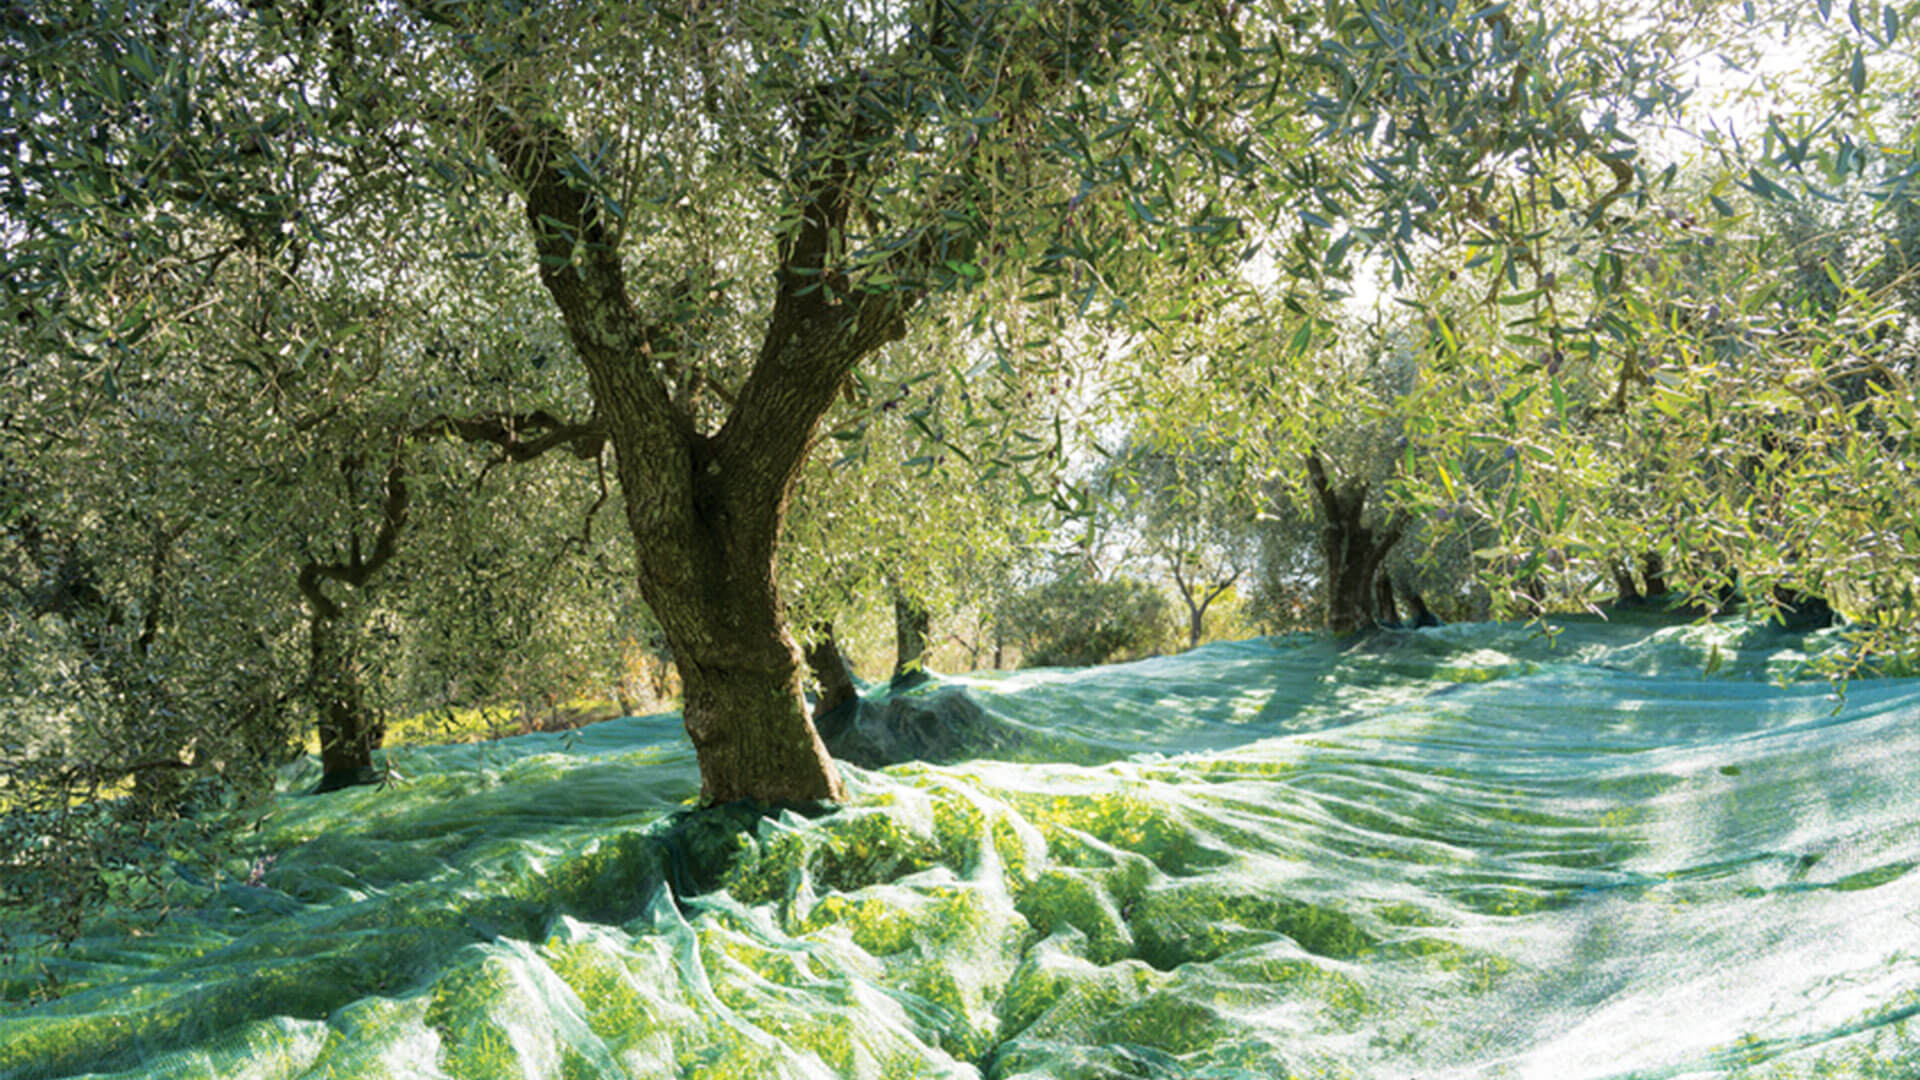 Red de cosecha para profesionales oliva, castanas, nueces, avena y semillas del bosque